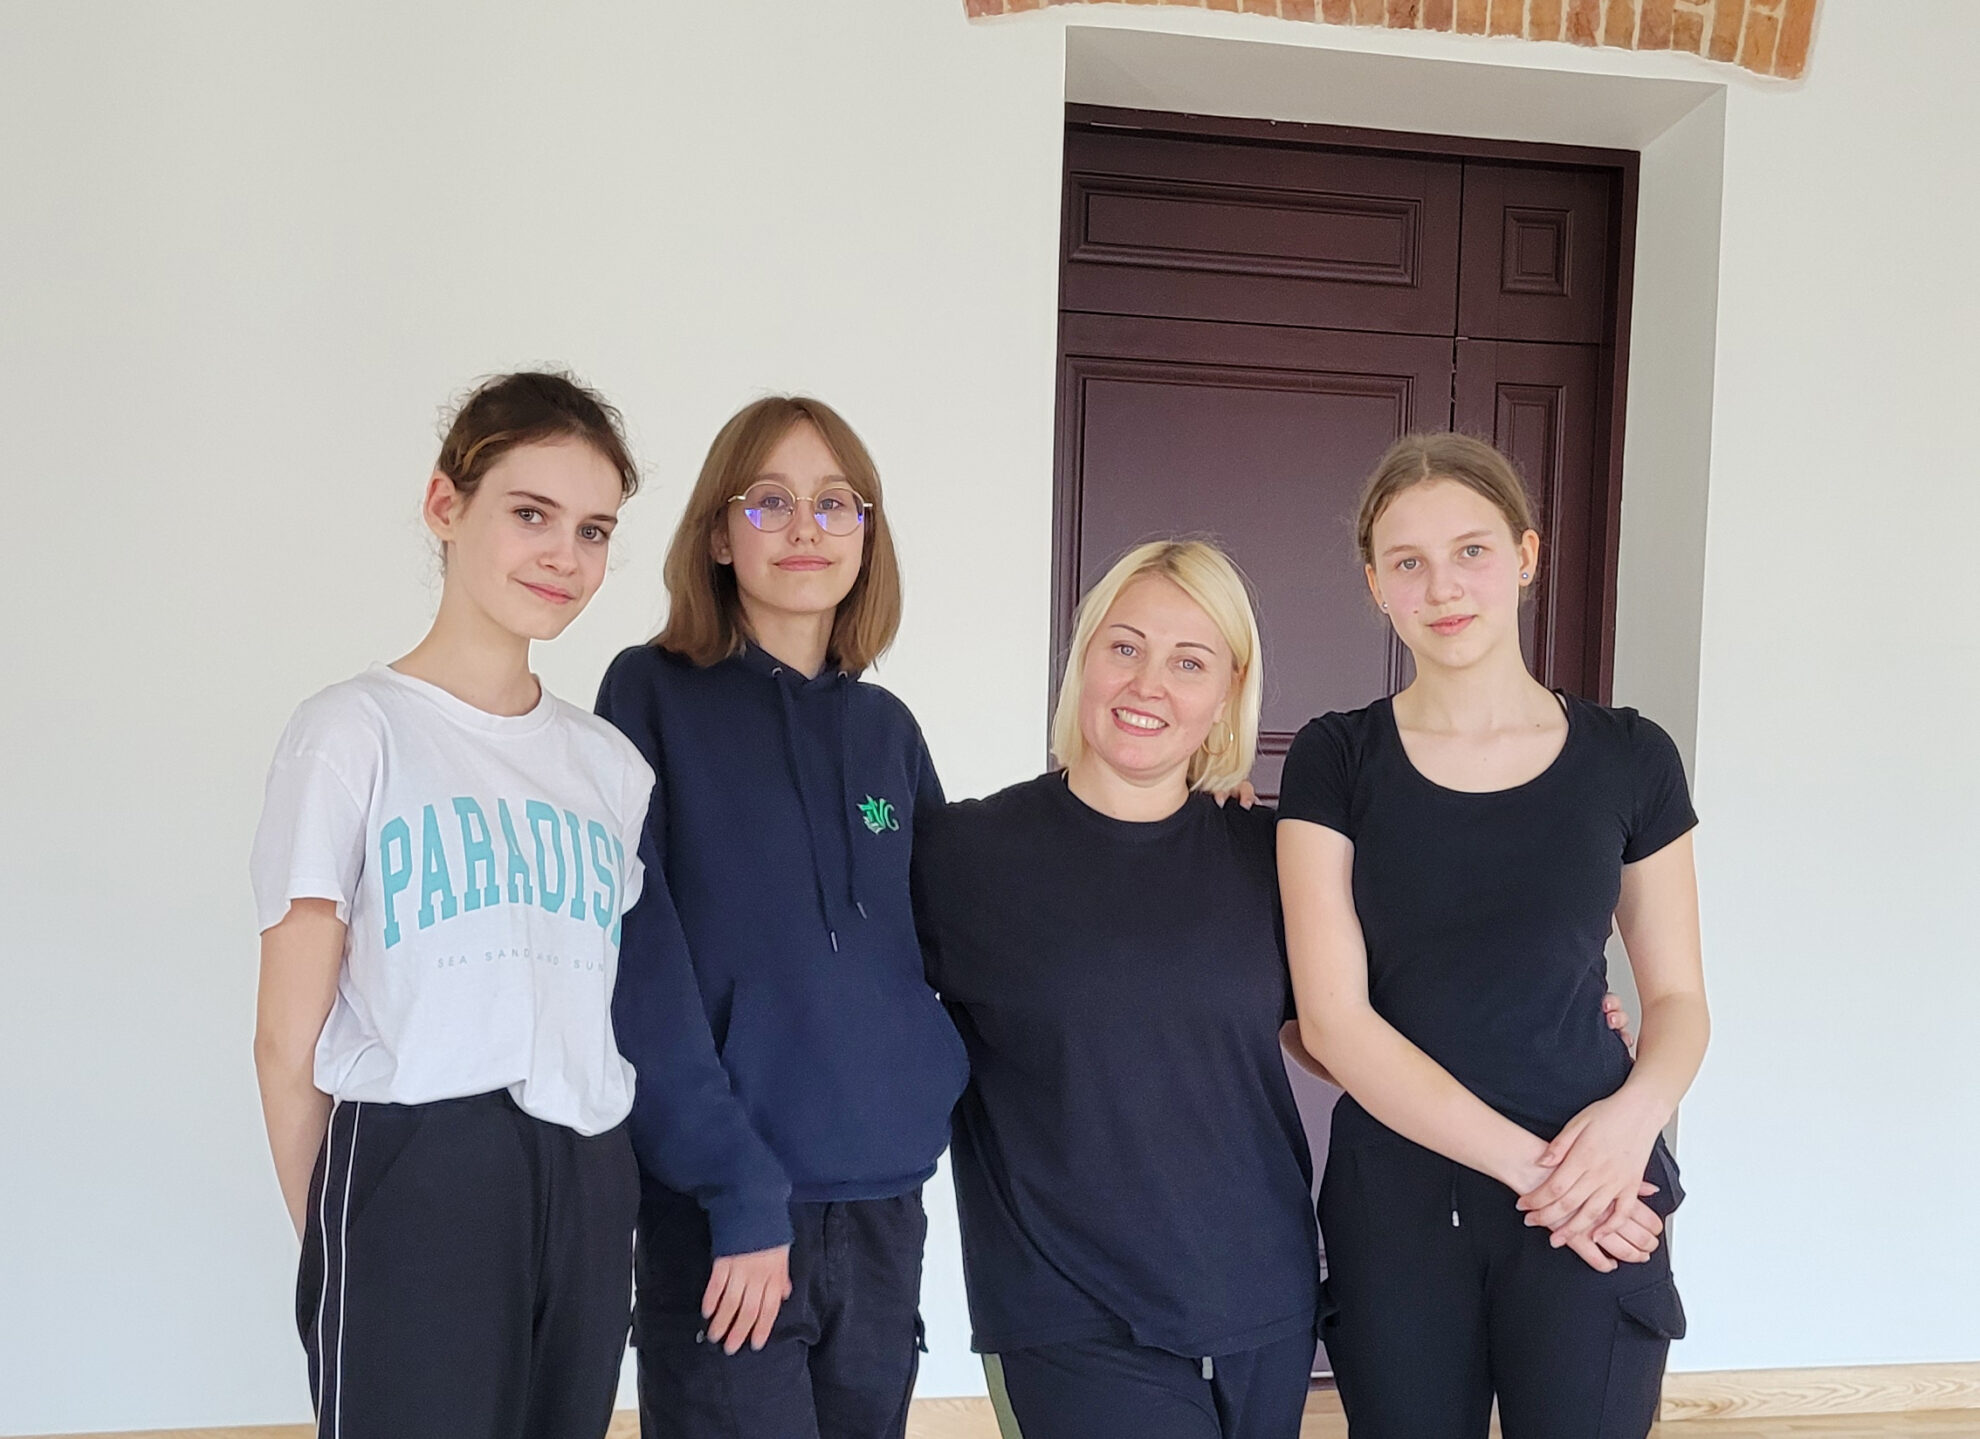 Olena, Lilija, Anna ir Vida nepažįsta viena kitos, jos gyveno skirtinguose miestuose. Šias moteris vienija bendras likimas – bėgdamos nuo karo Ukrainoje visos atsidūrė mūsų šalyje.